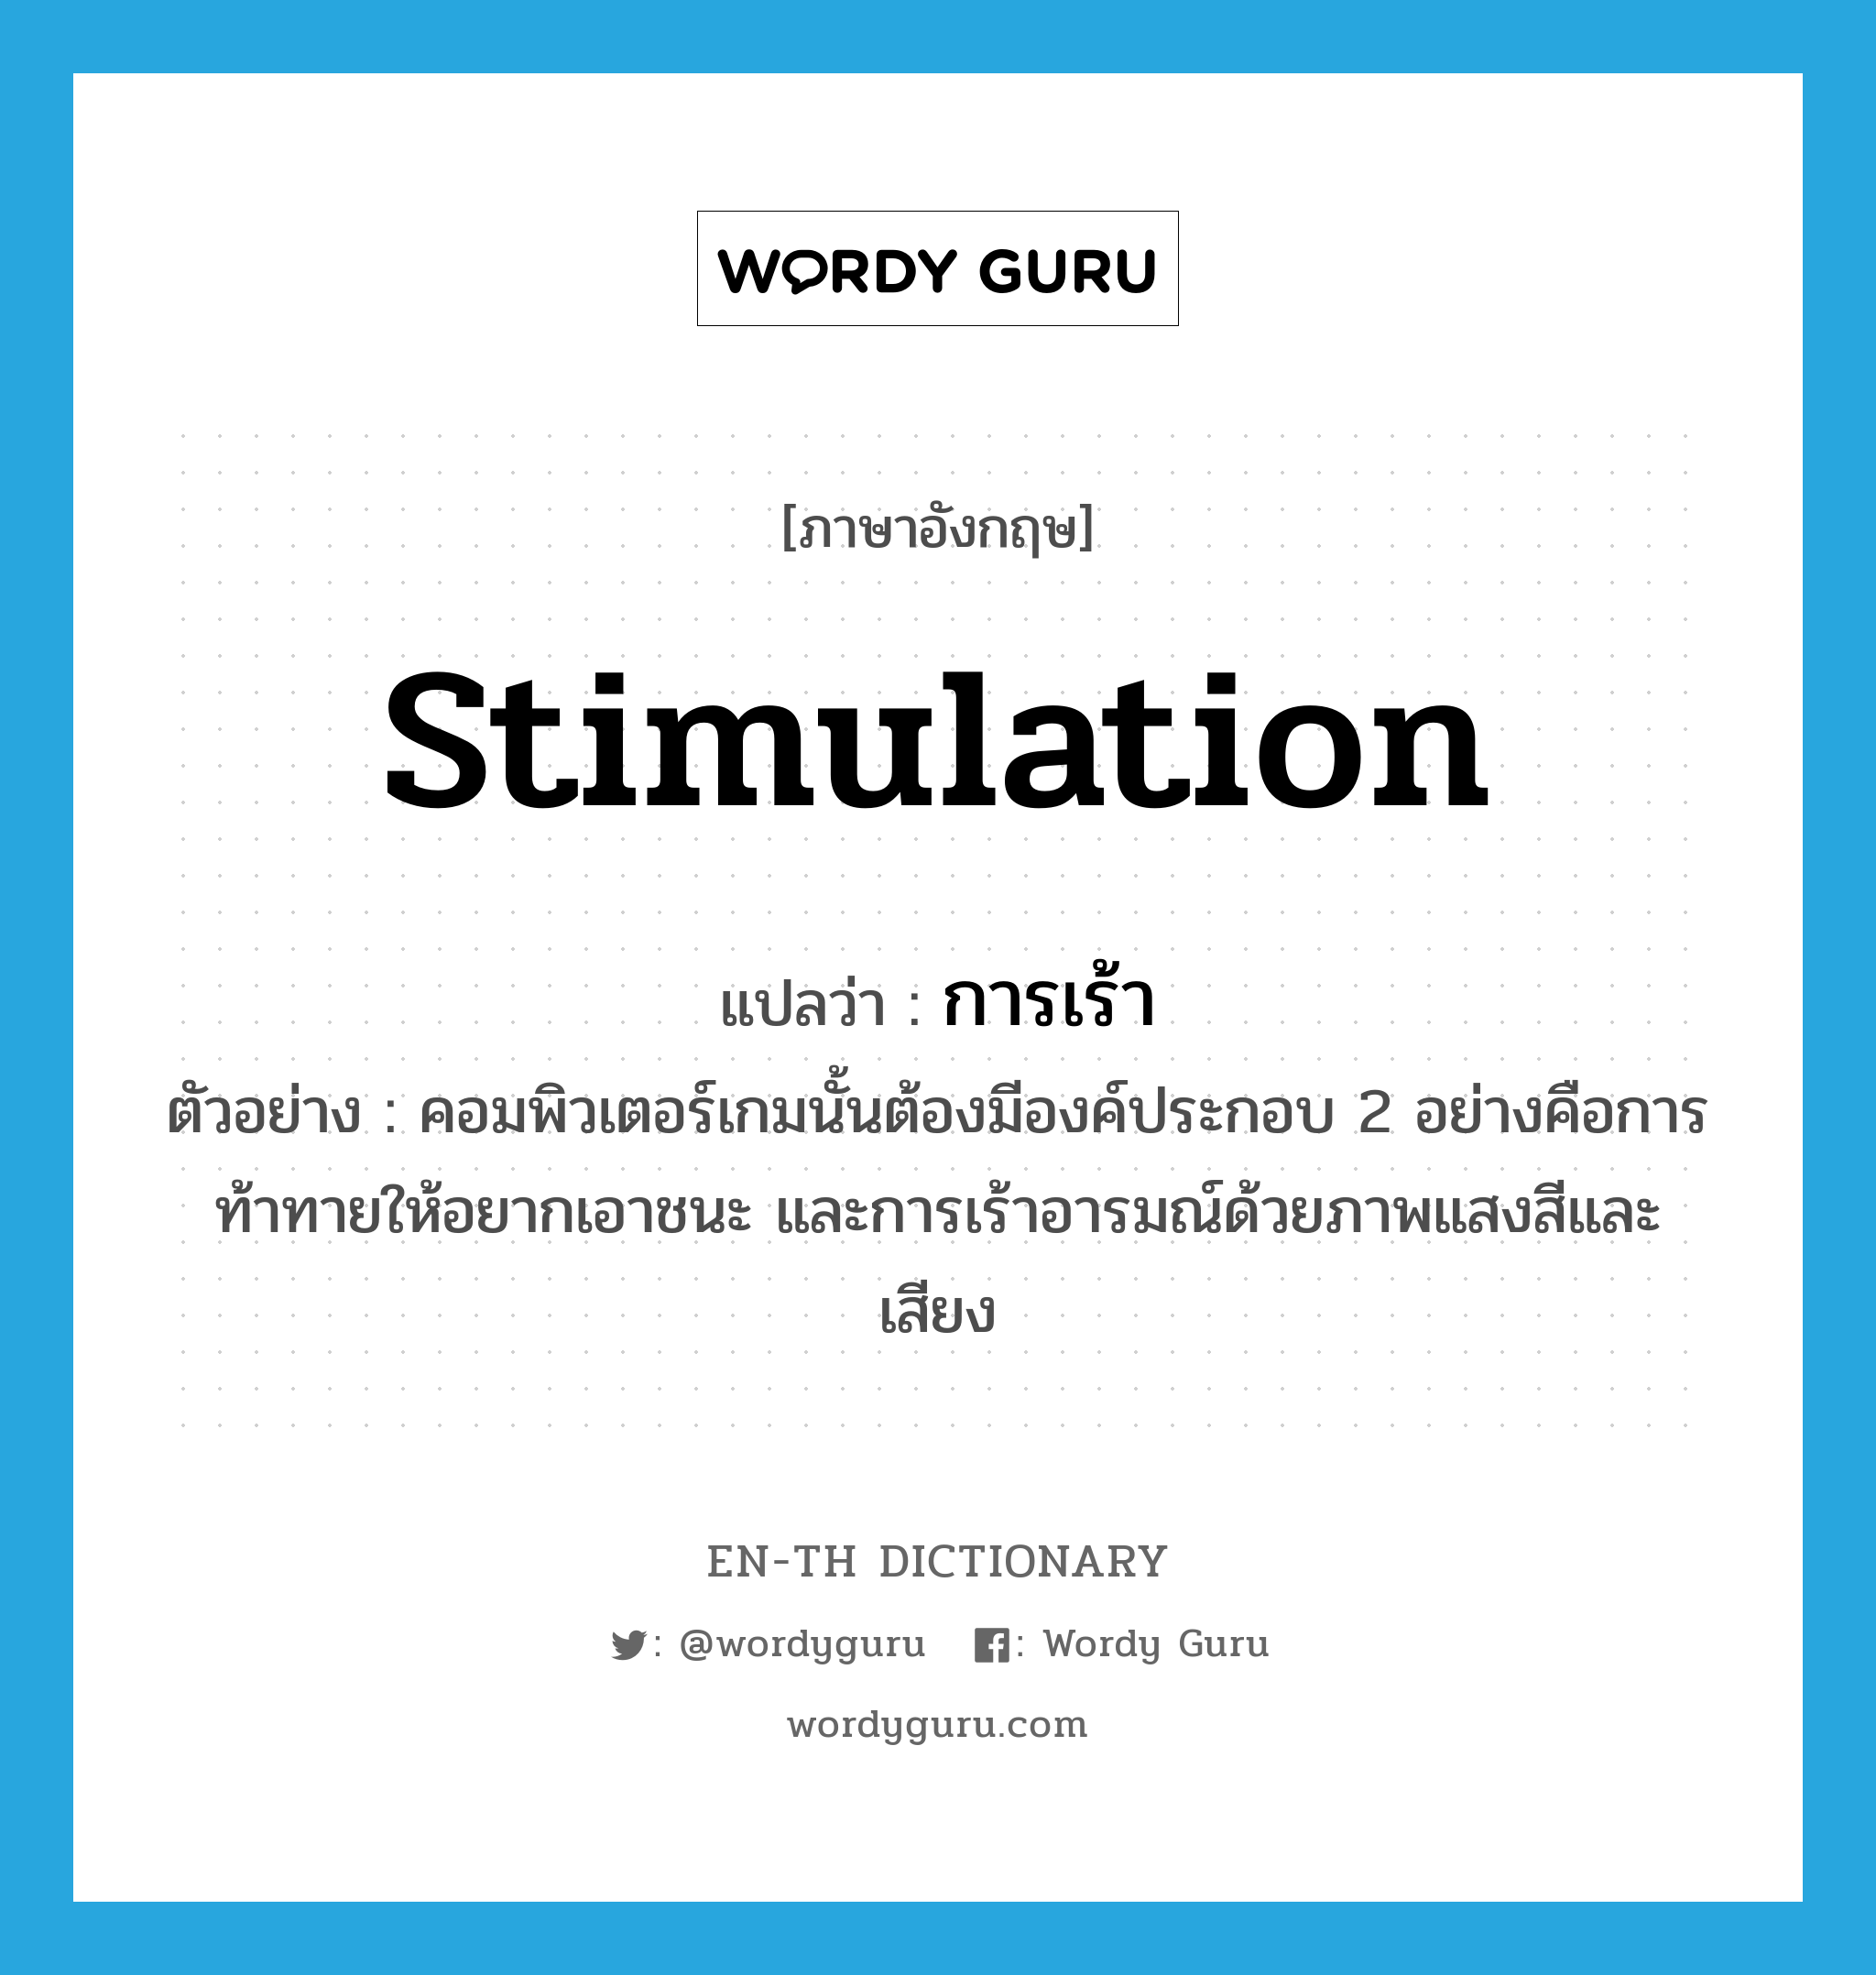 stimulation แปลว่า?, คำศัพท์ภาษาอังกฤษ stimulation แปลว่า การเร้า ประเภท N ตัวอย่าง คอมพิวเตอร์เกมนั้นต้องมีองค์ประกอบ 2 อย่างคือการท้าทายให้อยากเอาชนะ และการเร้าอารมณ์ด้วยภาพแสงสีและเสียง หมวด N